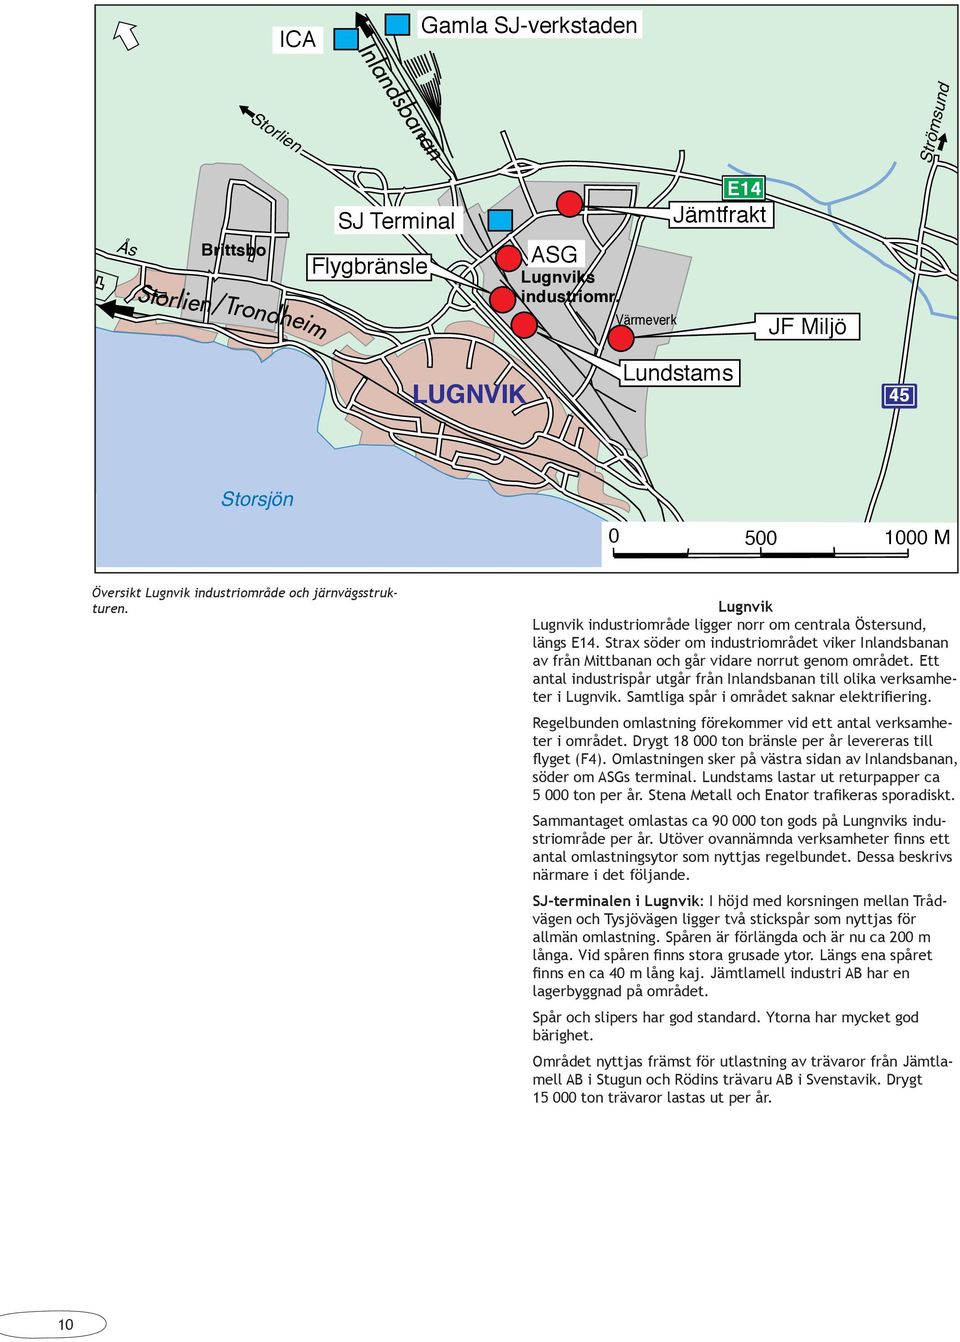 Lugnvik Lugnvik industriområde ligger norr om centrala Östersund, längs E14. Strax söder om industriområdet viker Inlandsbanan av från Mittbanan och går vidare norrut genom området.